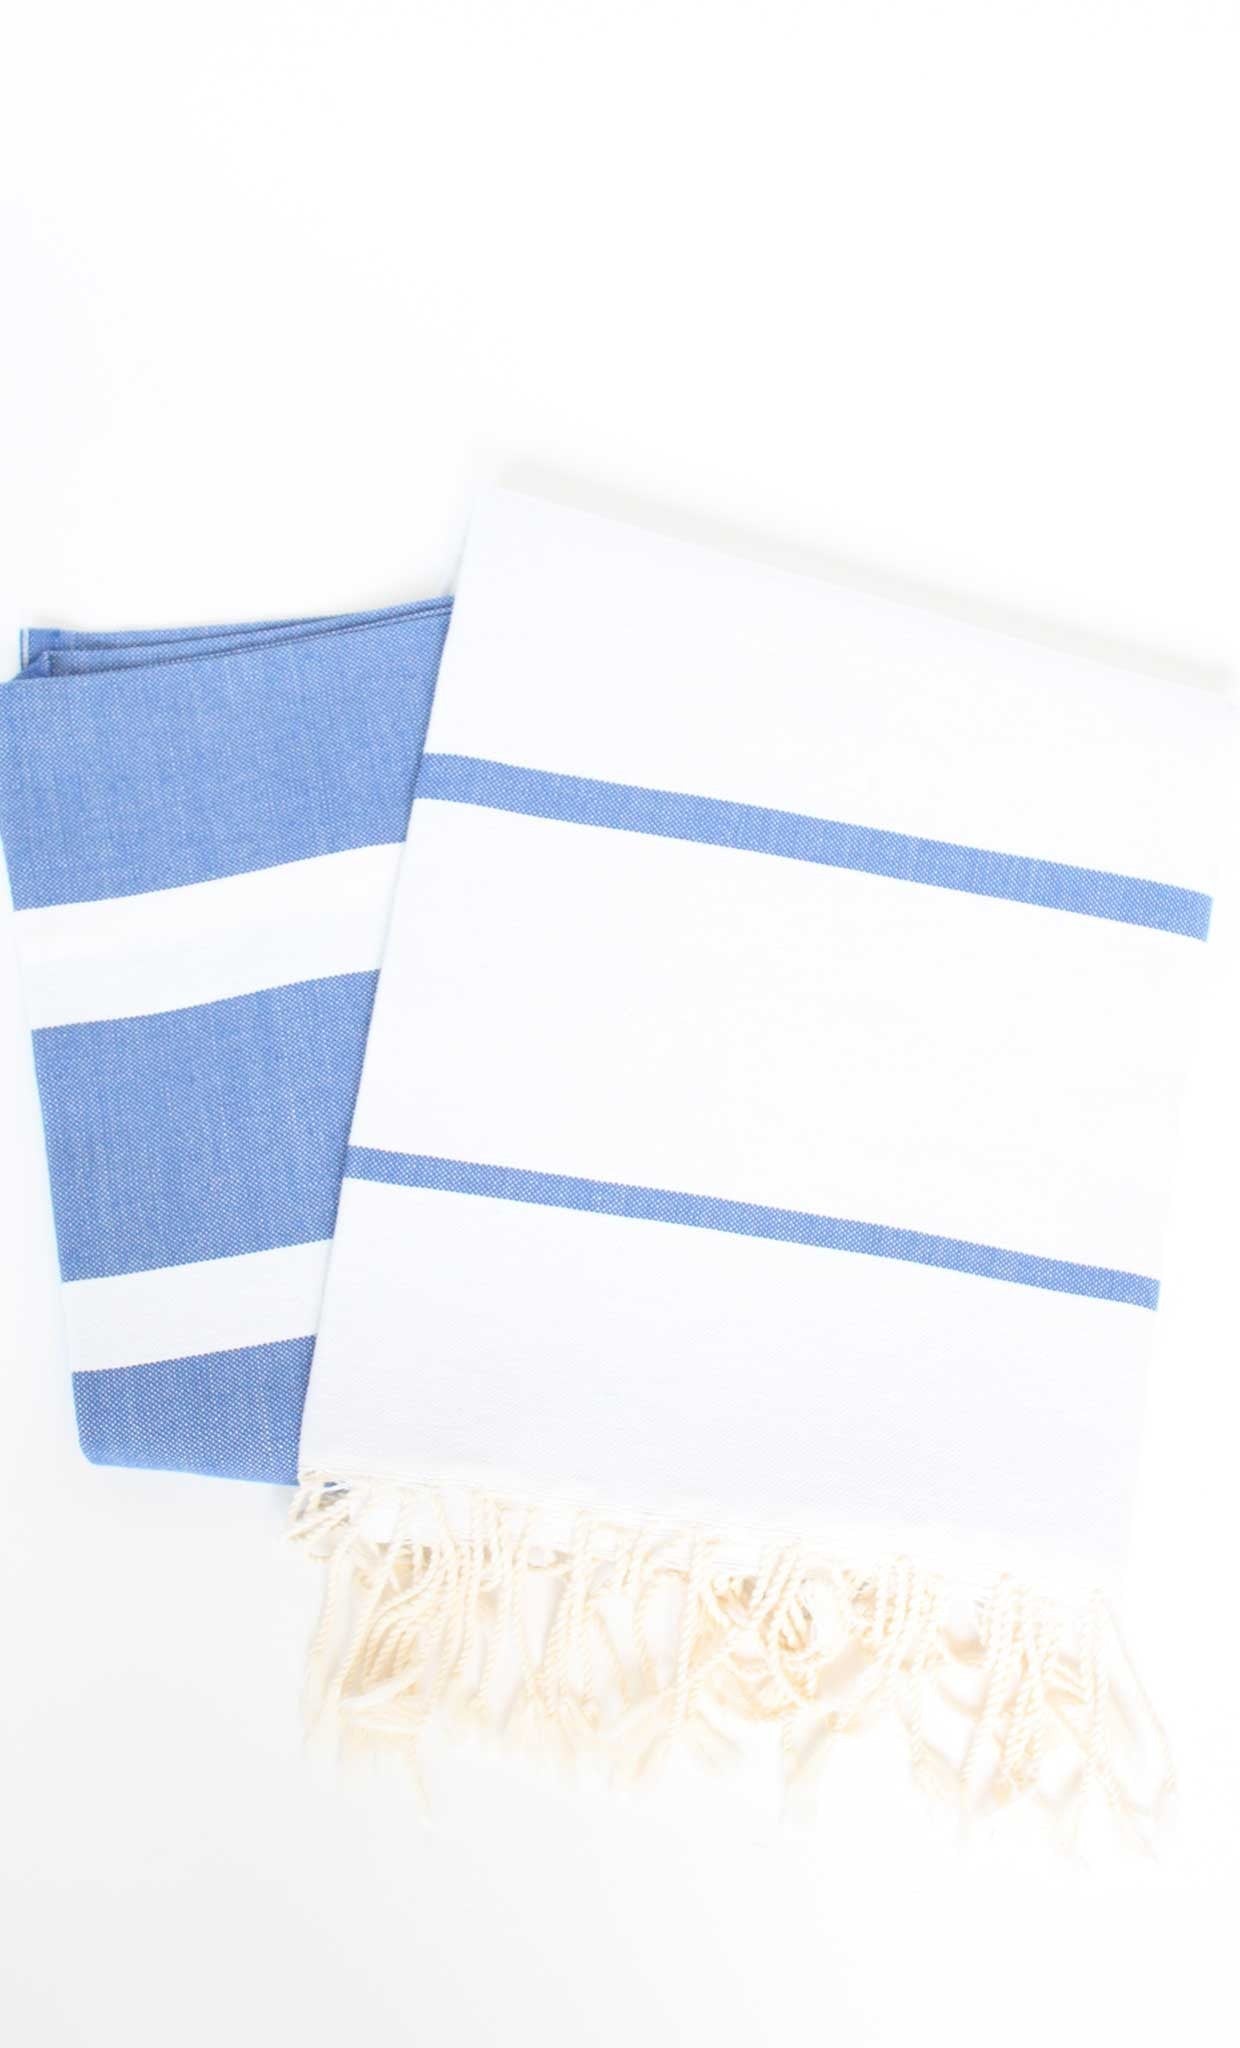 Turkish Towel Multiband Blue Canvas